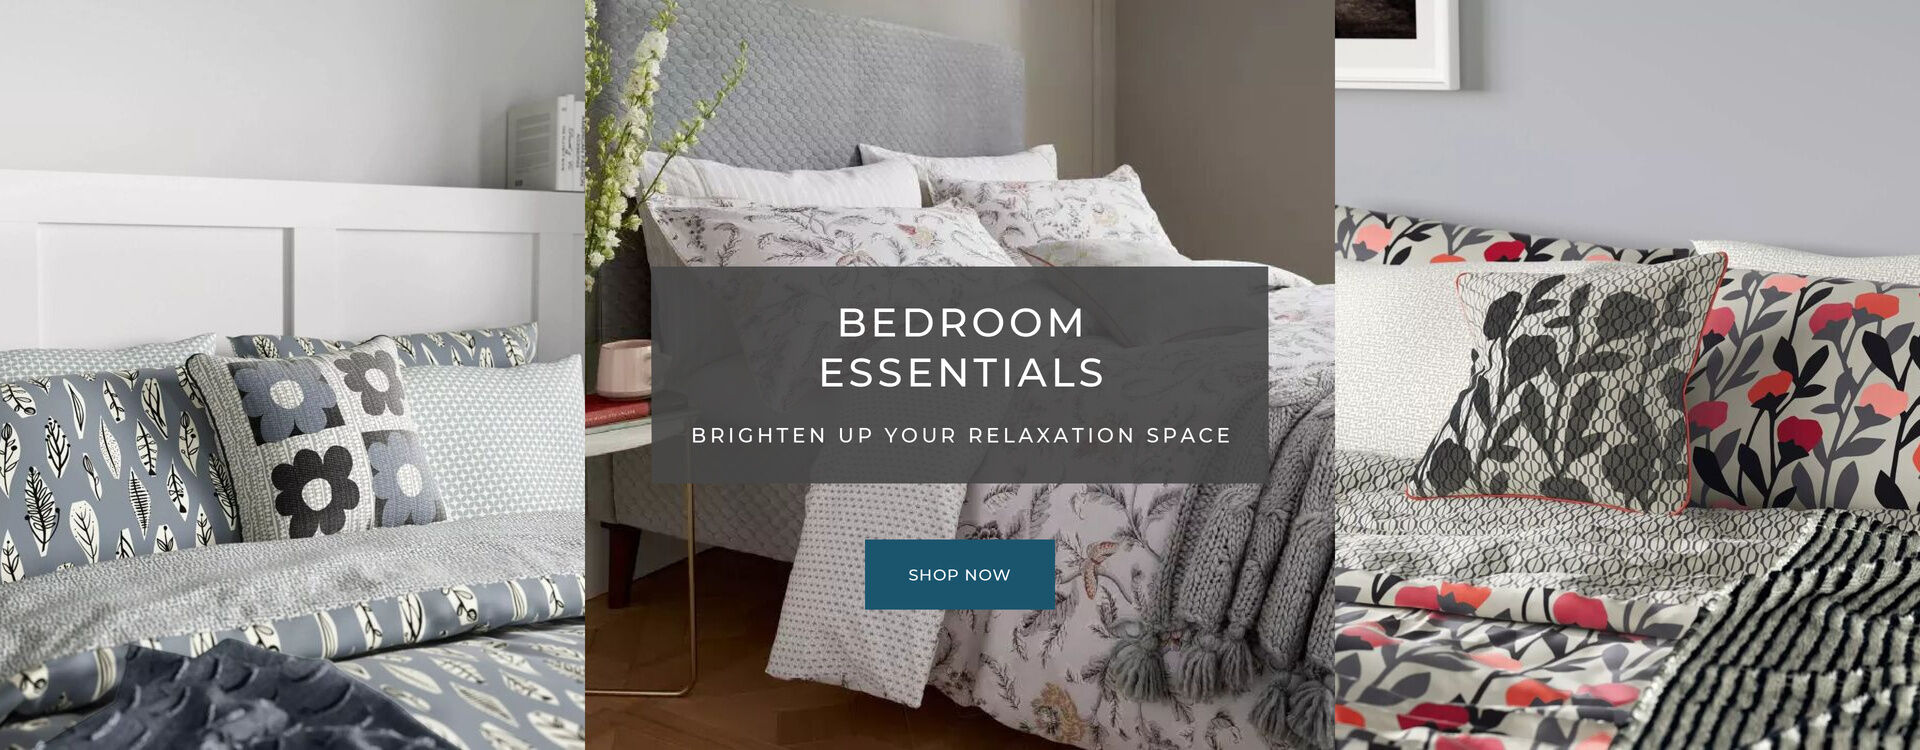 Bedroom Essentials - Helena Springfield